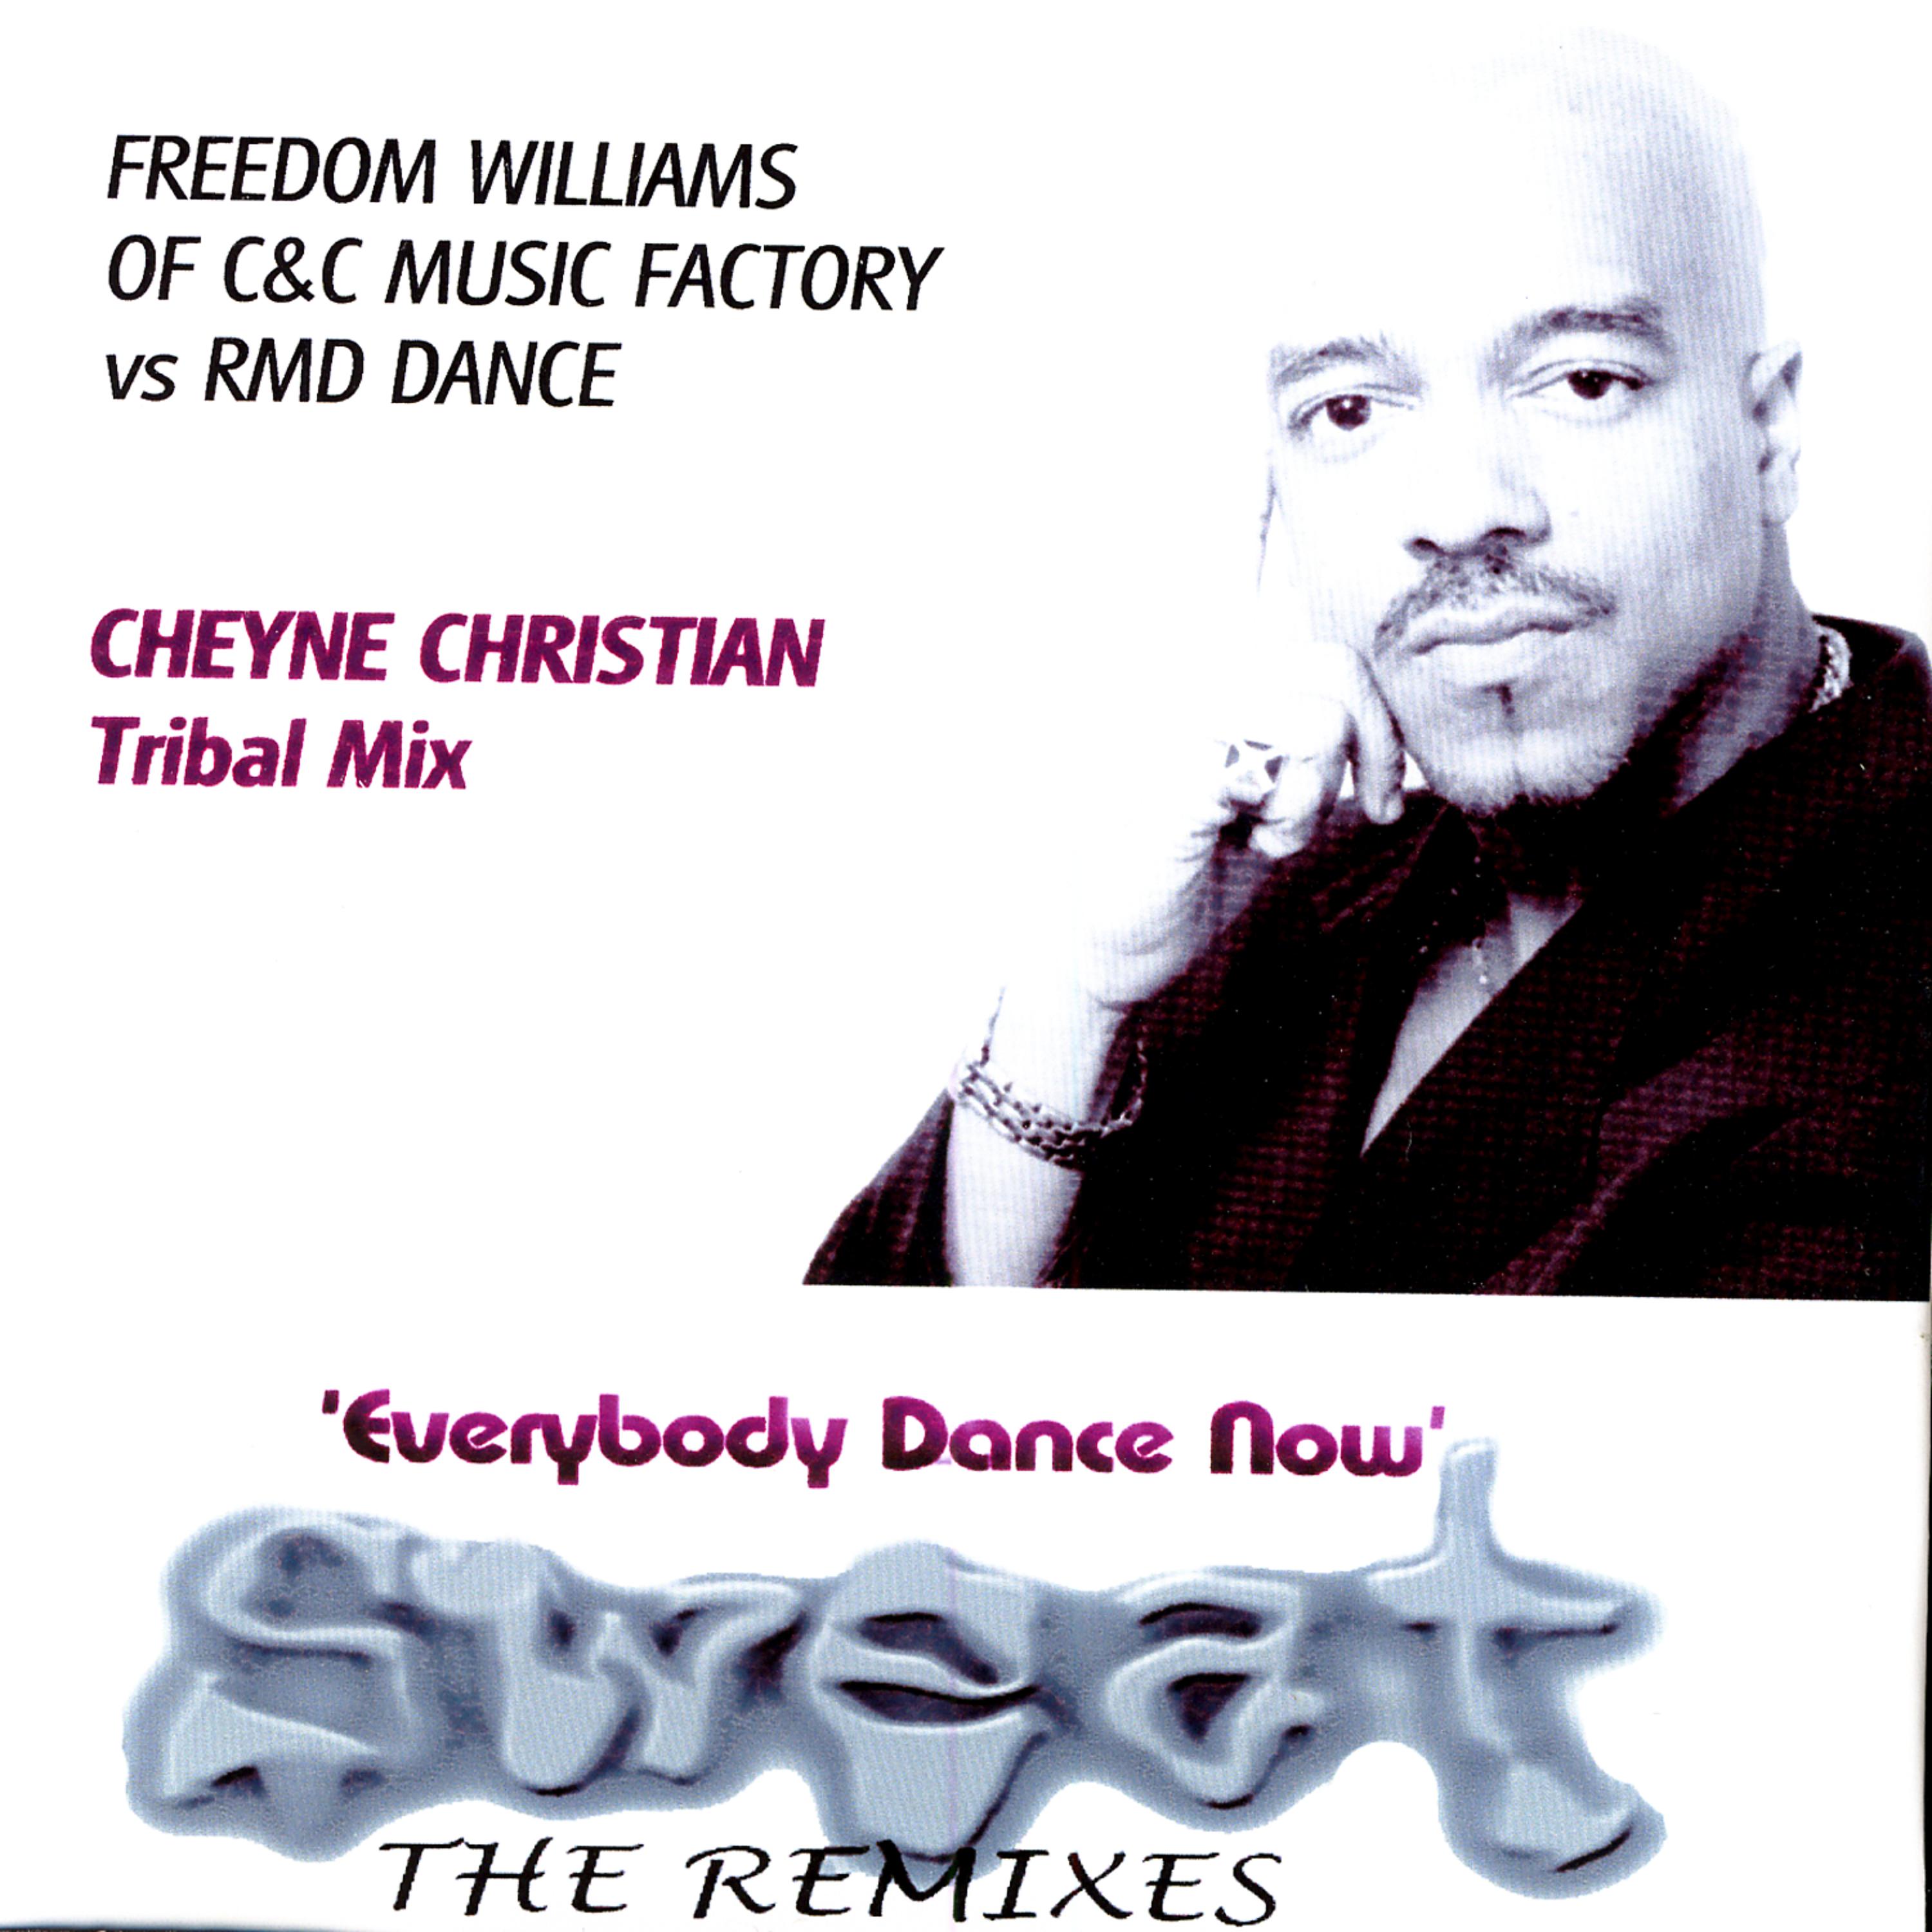 Постер альбома SWEAT 1 (The Remixes) Feat. FREEDOM WILLIAMS